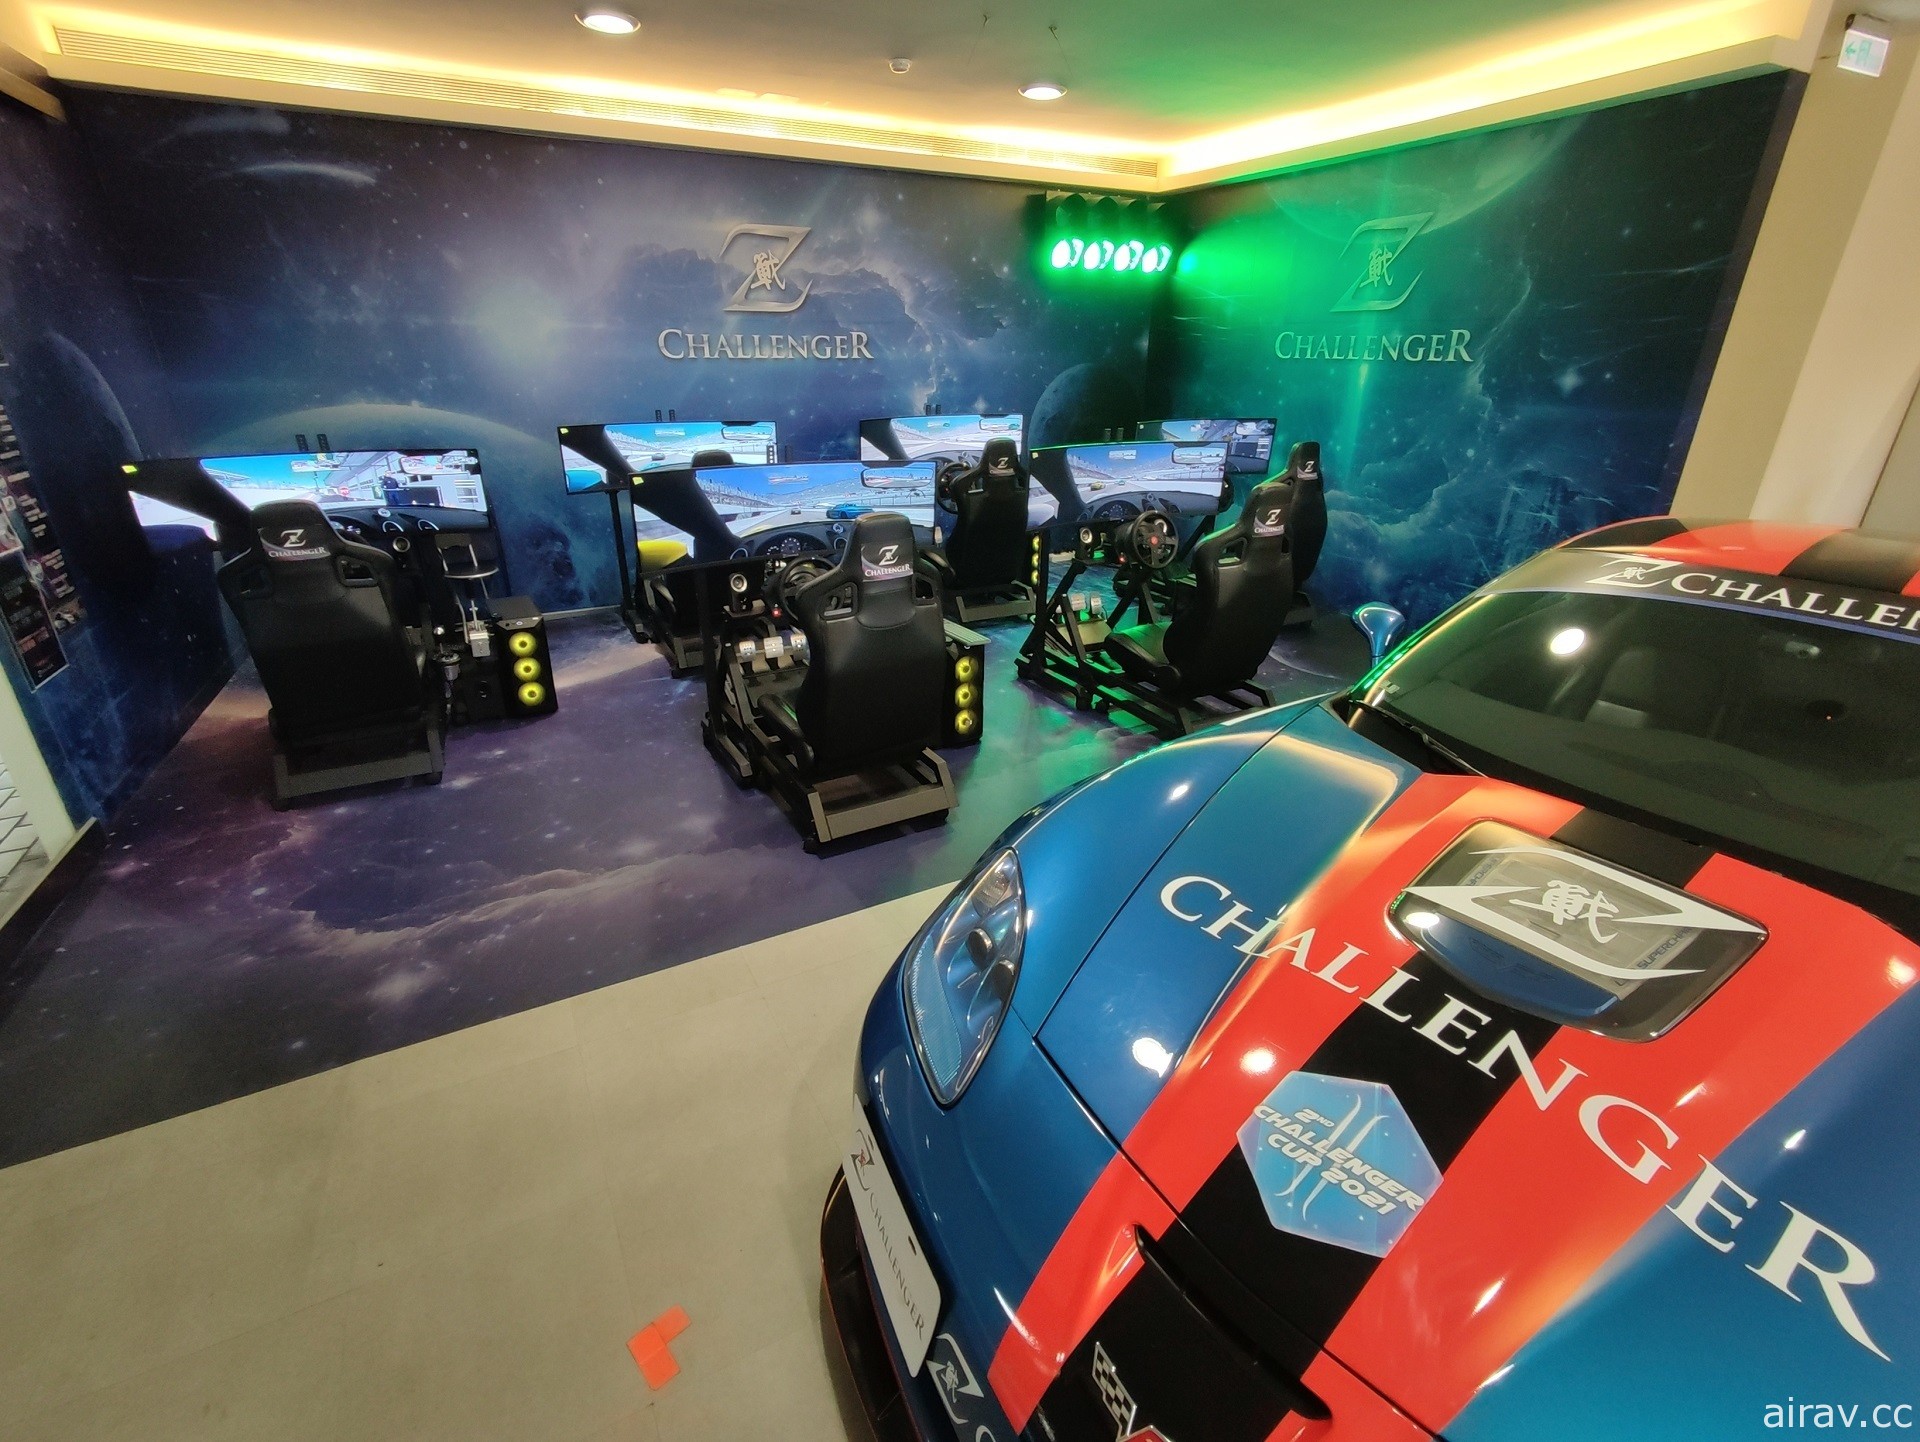 赛车电竞赛事“Z-Challenger 虎年杯极速挑战赛”预定 15 日登场